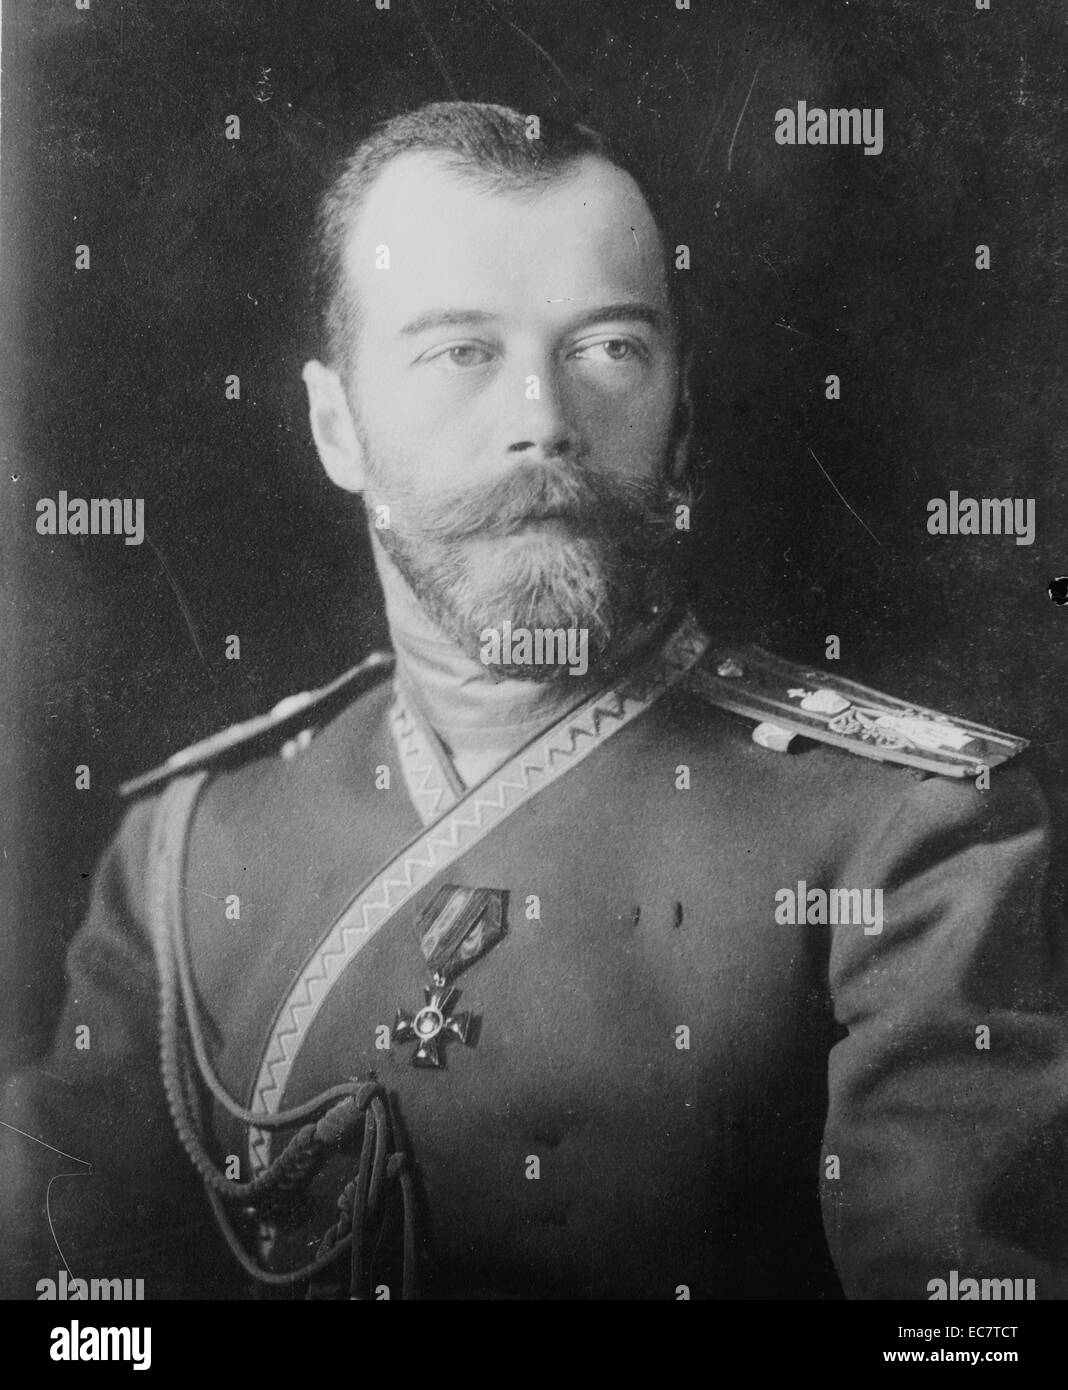 Fotografia di imperatore Nicola II, l'ultimo zar di Russia. 18 maggio 1868 - 17 luglio 1918. Foto Stock